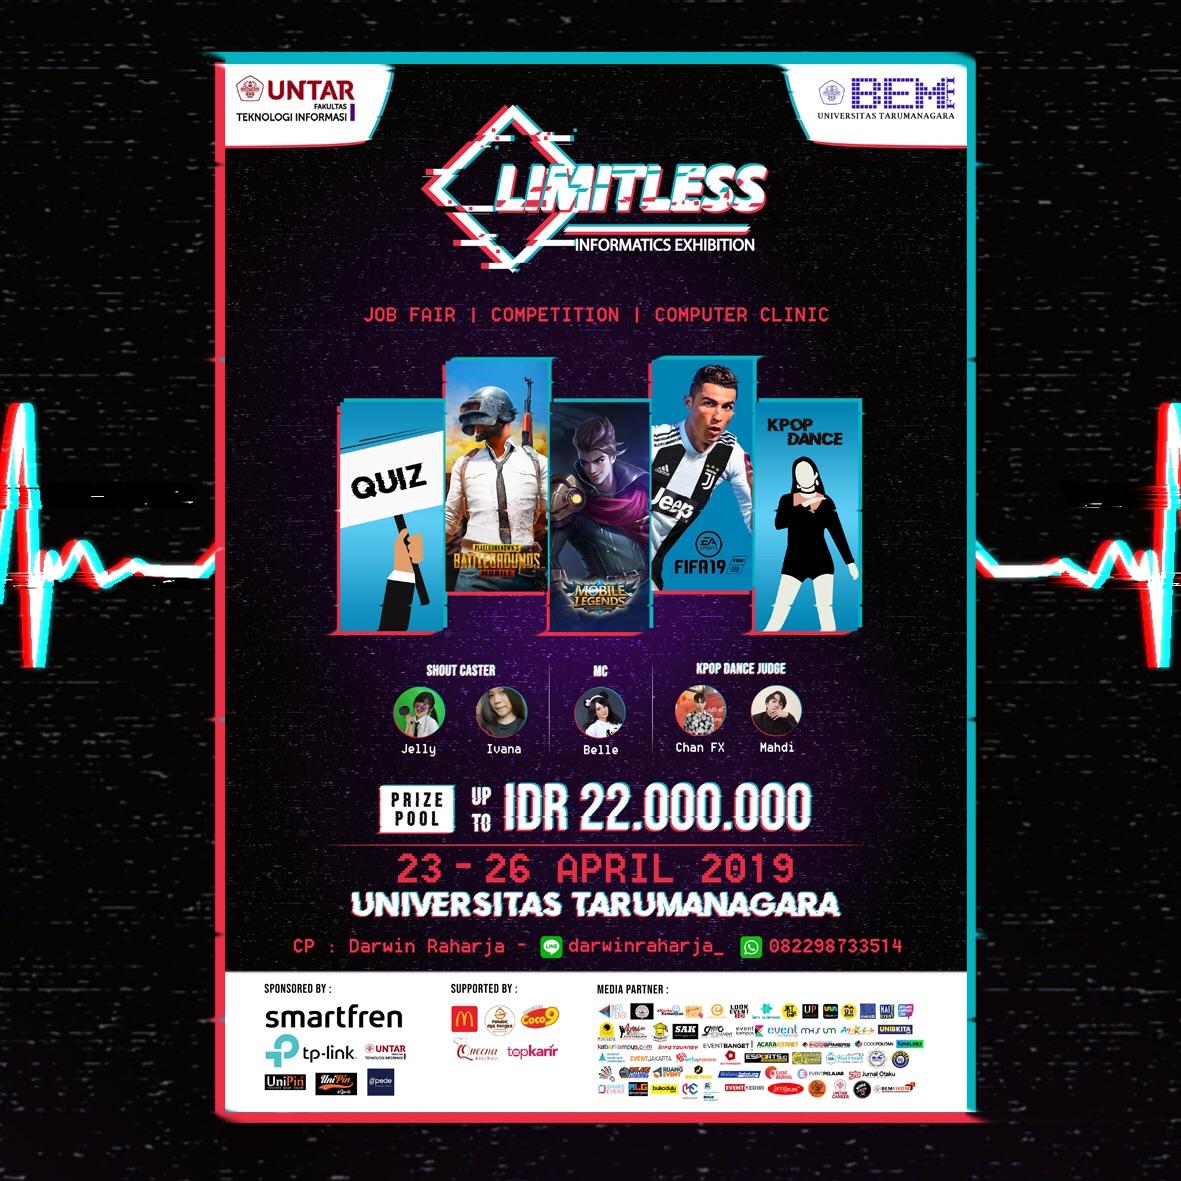 BEM FTI UNTAR Hadirkan Informatics Exhibition 2019 Limitless, Event Kompetisi Dengan Total Hadiah 22 Juta Rupiah